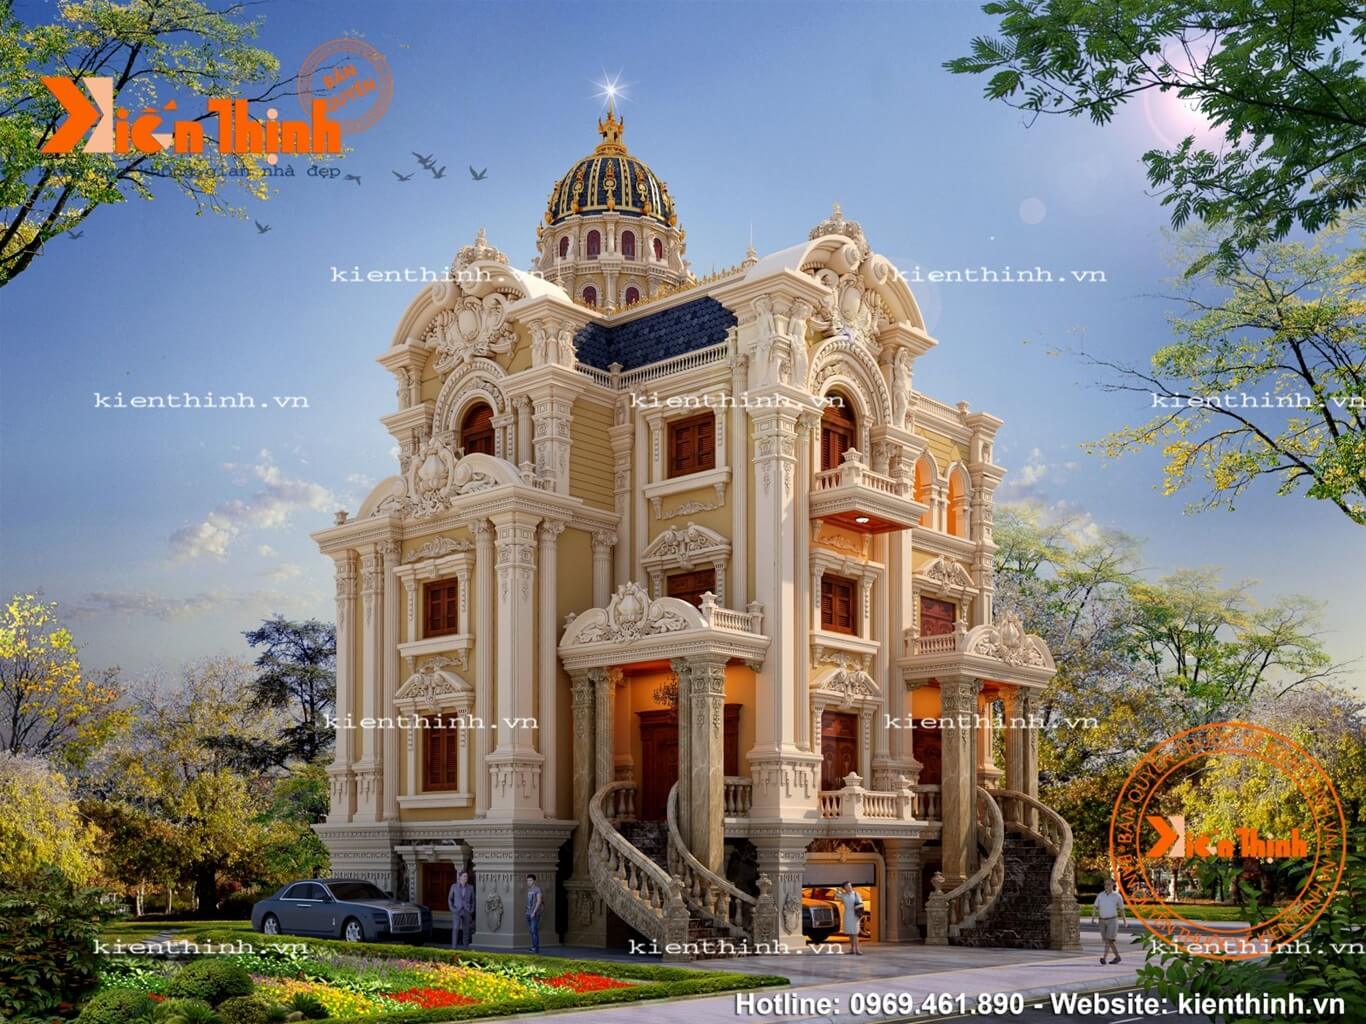 Mẫu thiết kế biệt thự lâu đài 4 tầng kiểu tân cổ điển châu Âu đẹp đẳng cấp ở Bắc Ninh